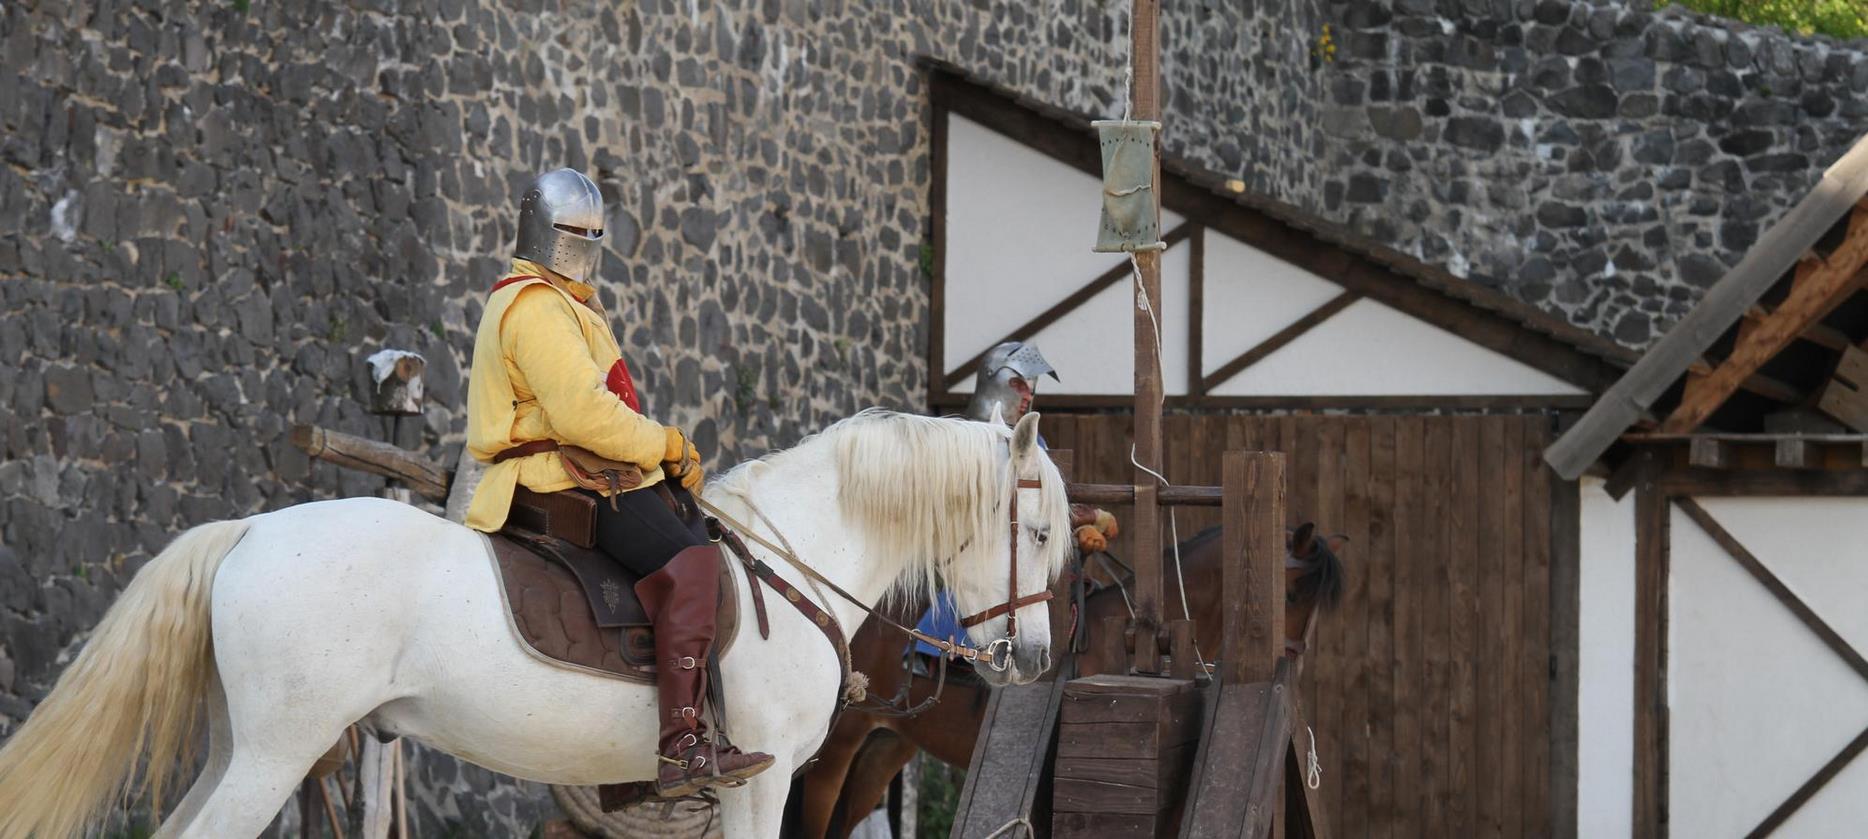 Super Besse - Chateau de Murol, and its equestrian show